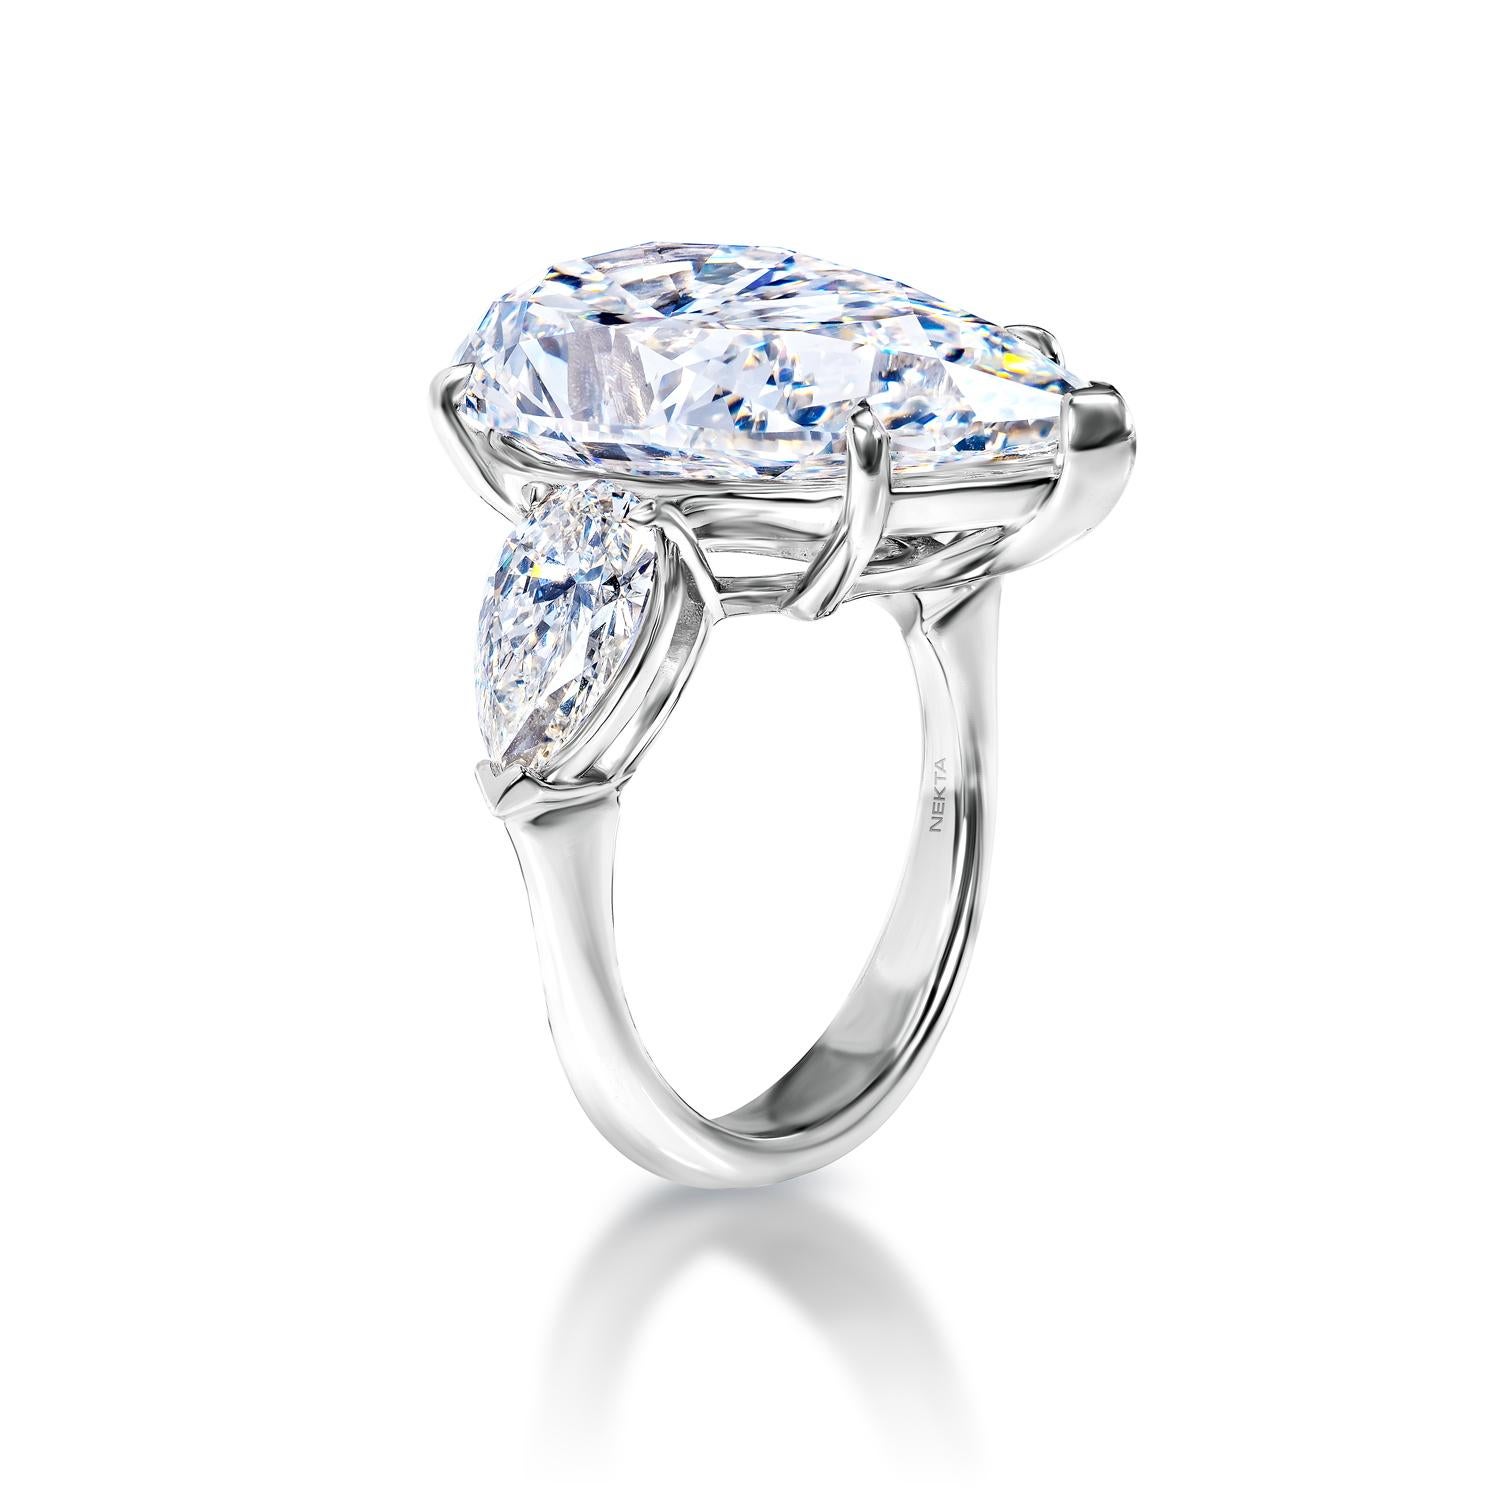 16 carat diamond price